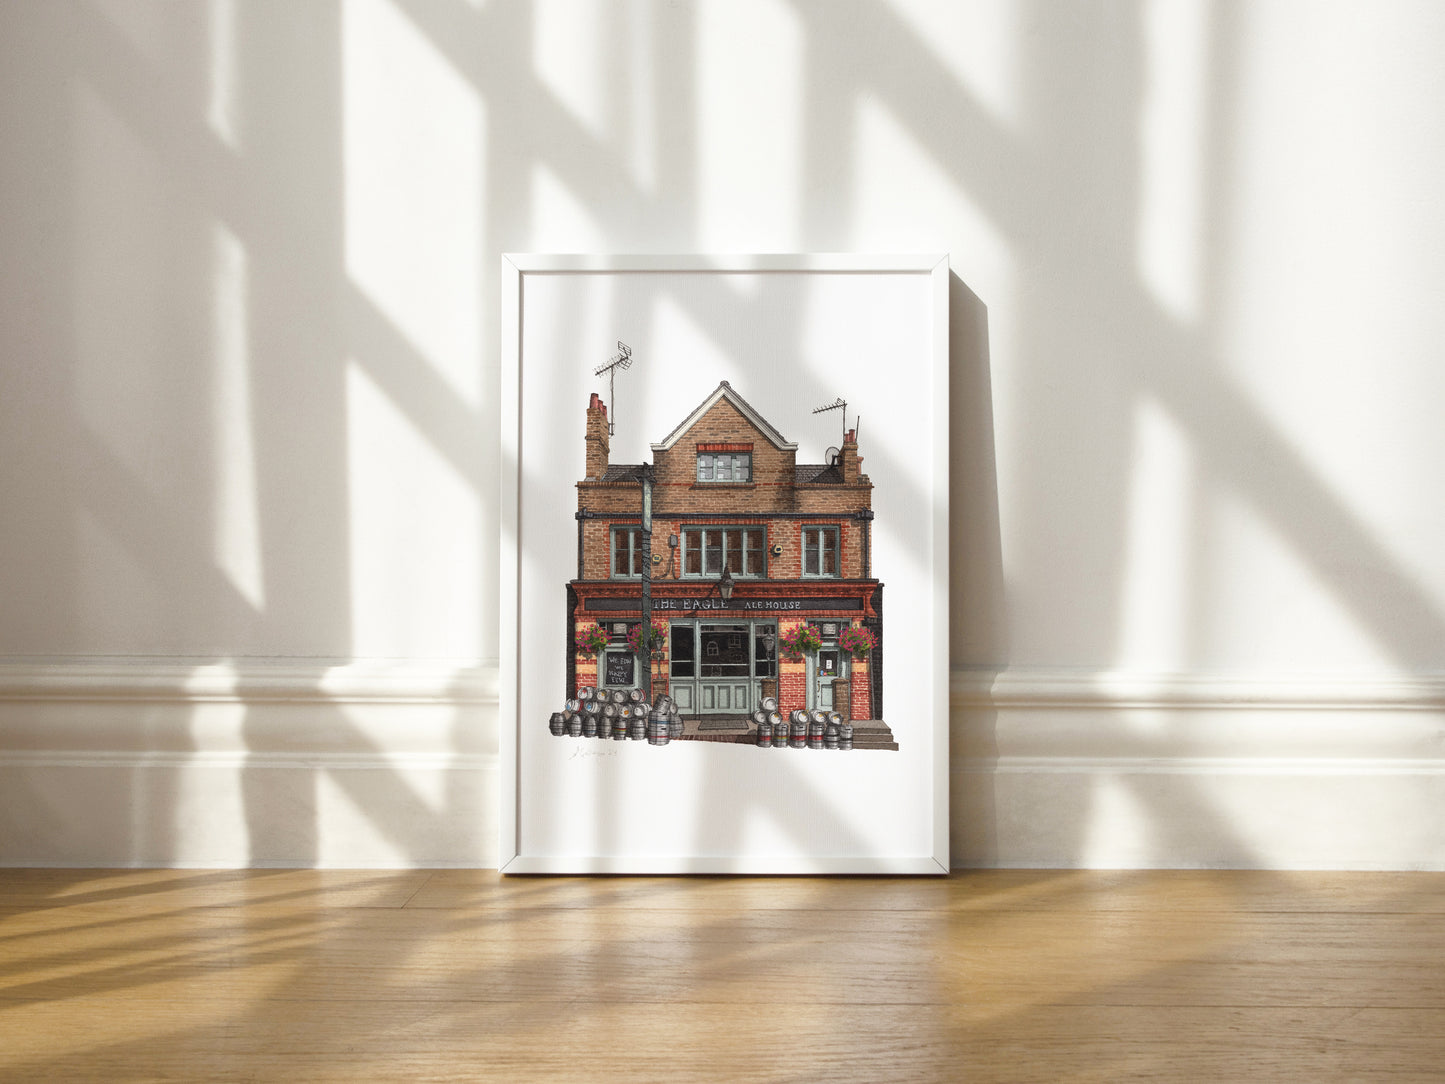 Clapham - The Eagle Ale House - Giclée Print (unframed)